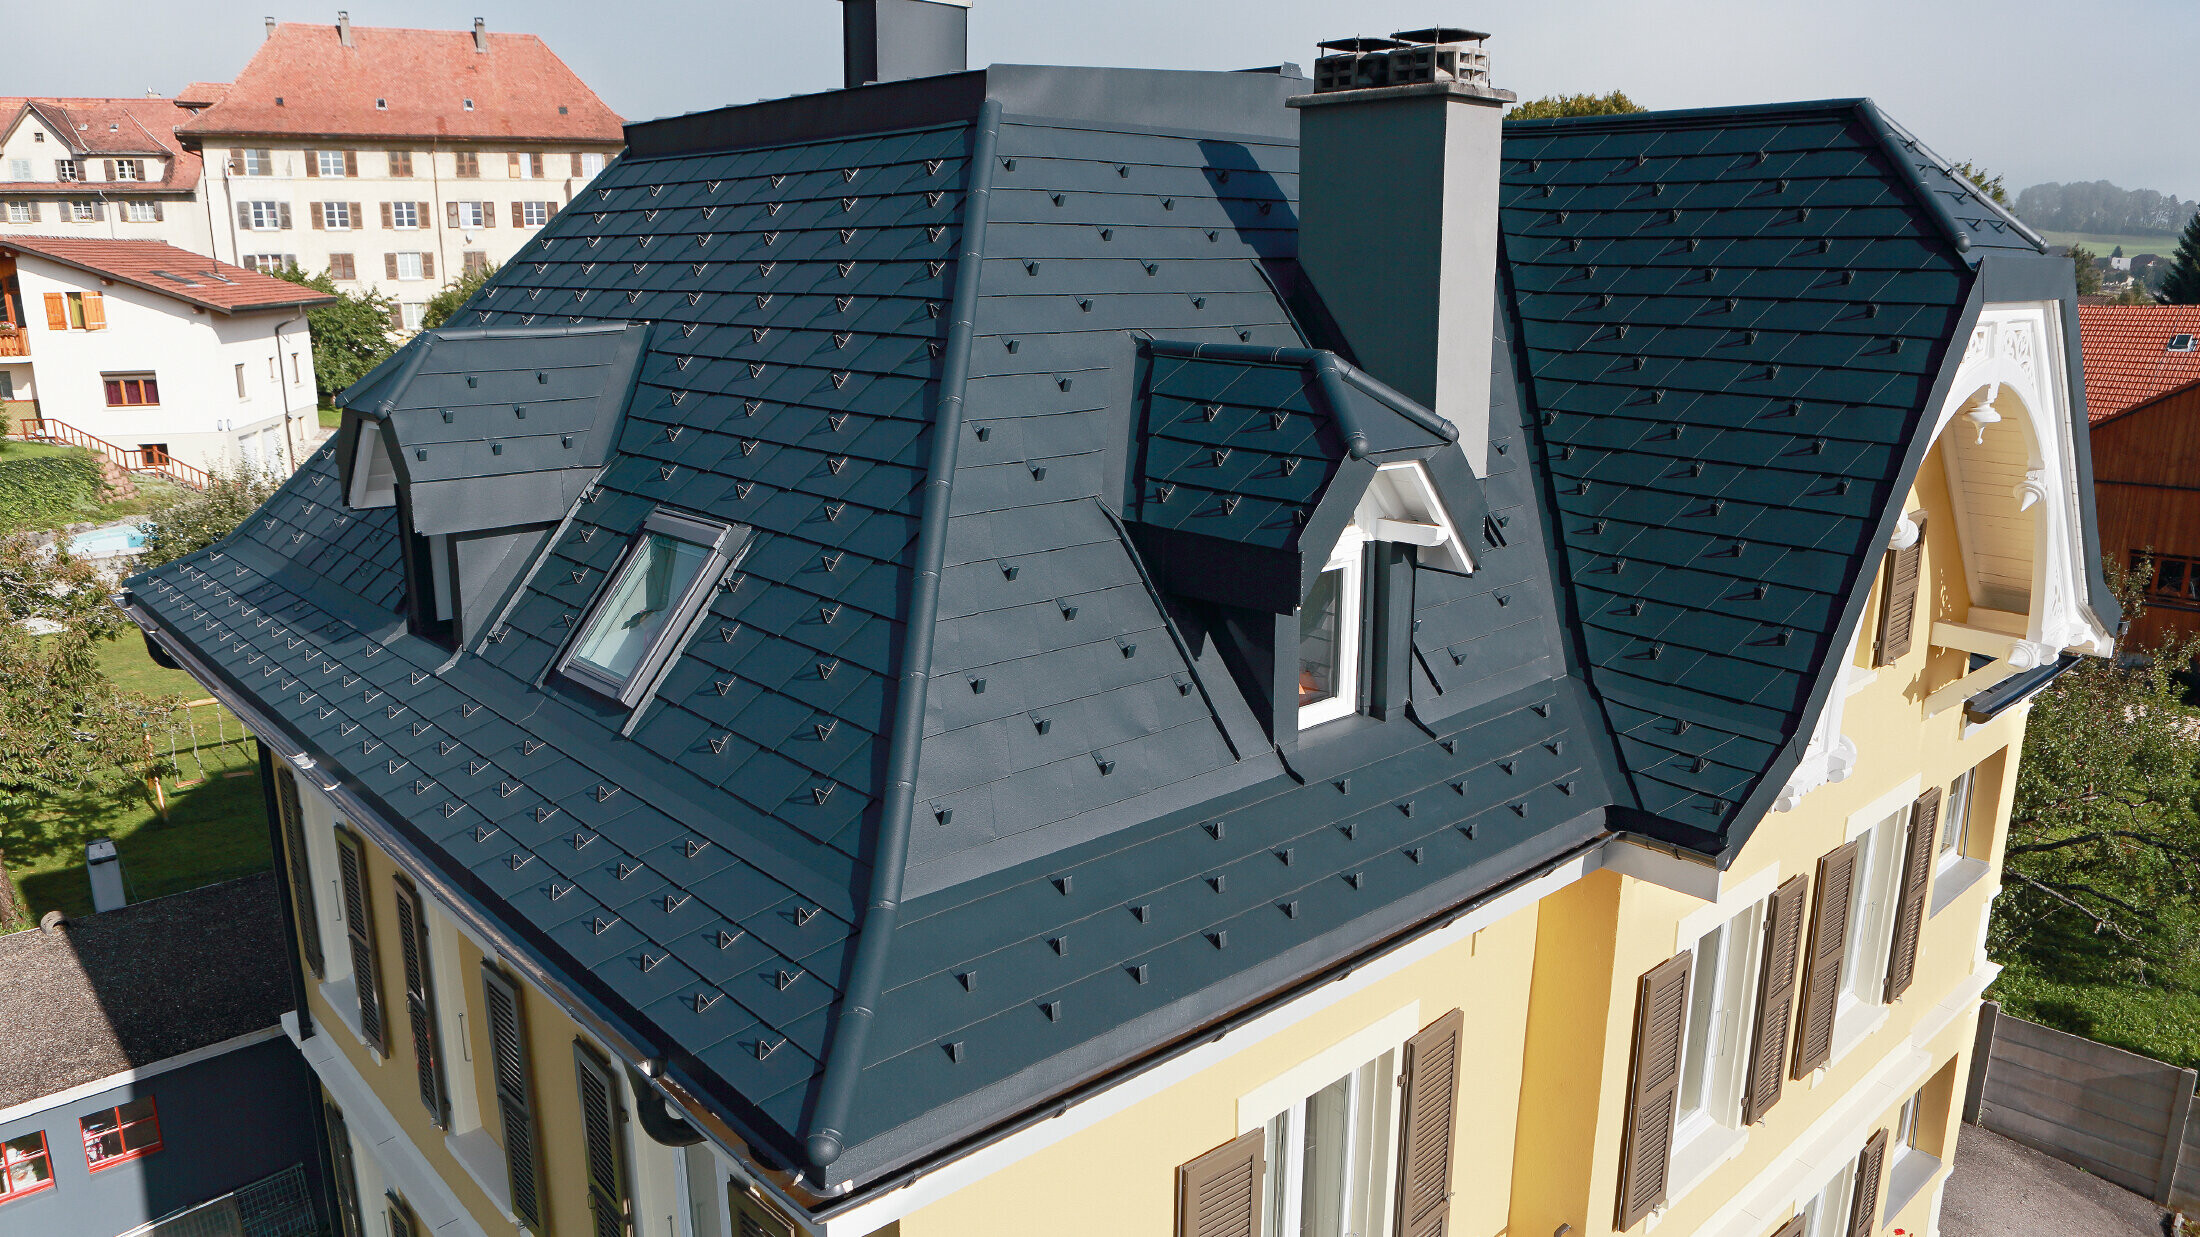 Villa in Svizzera, il tetto ha molti compluvi e piccoli abbaini, il tetto è coperto con scandole di alluminio PREFA in P.10 antracite.